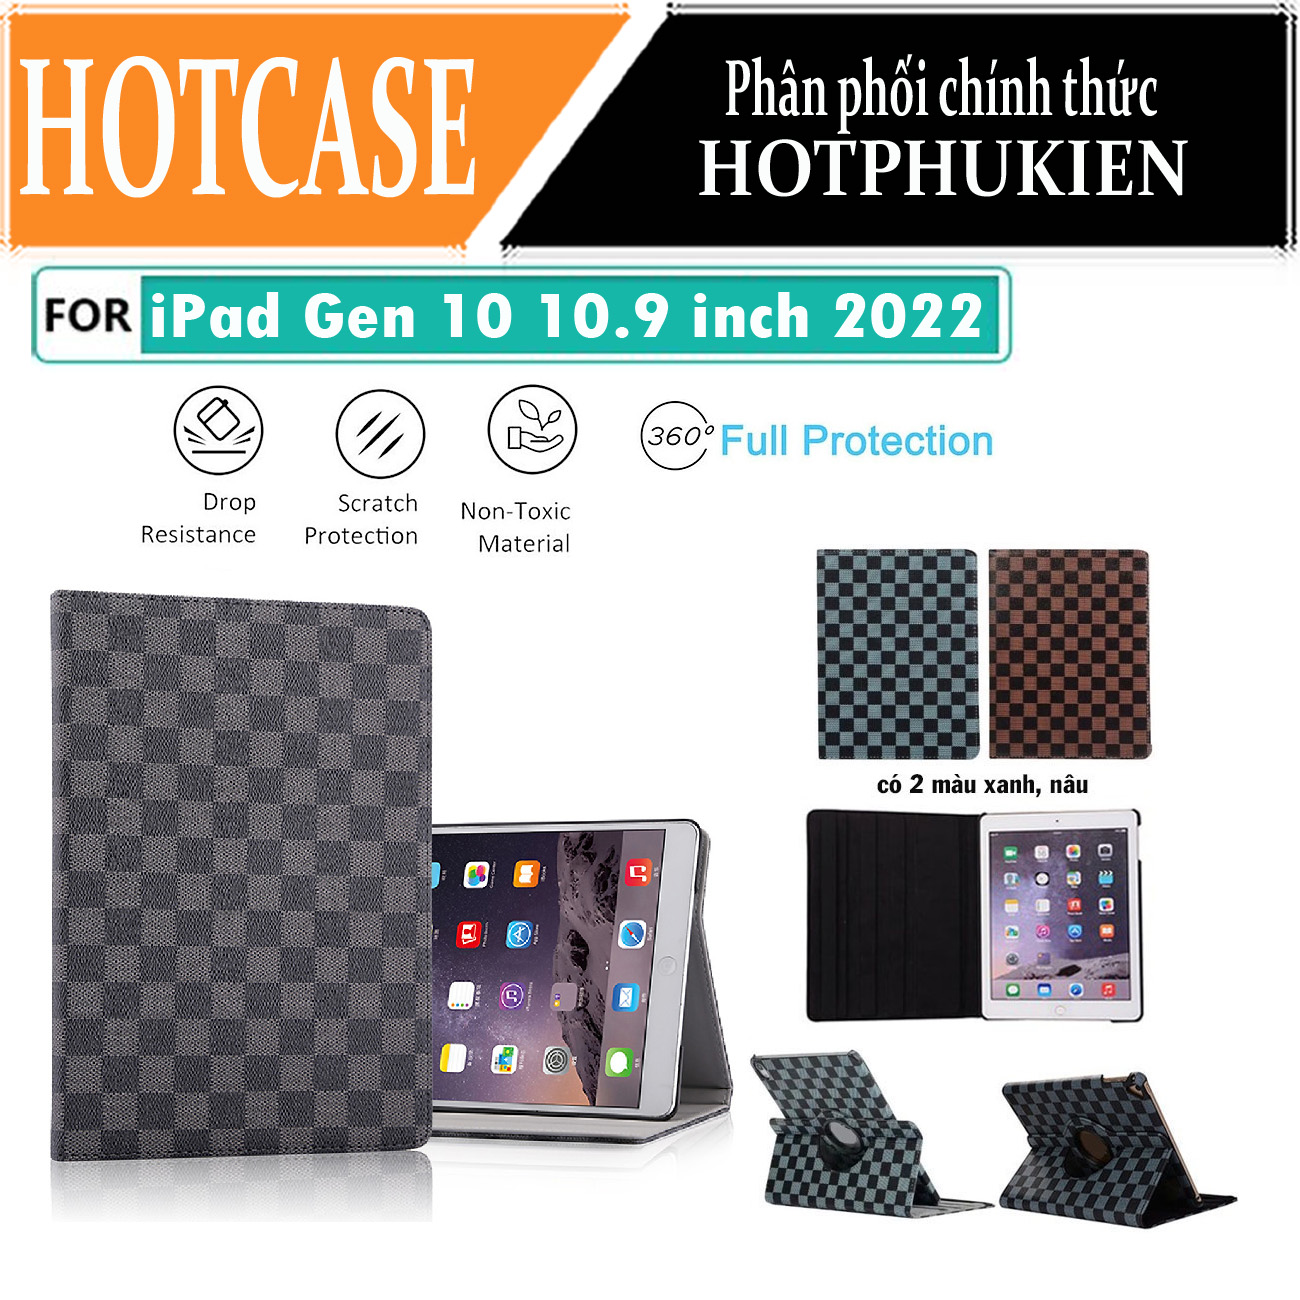 Case bao da caro xoay 360 độ cho iPad Gen 10 10.9 inch 2022 hiệu HOTCASE chống sốc cực tốt, bảo vệ toàn diện, trang bị tính năng smartsleep - Hàng nhập khẩu